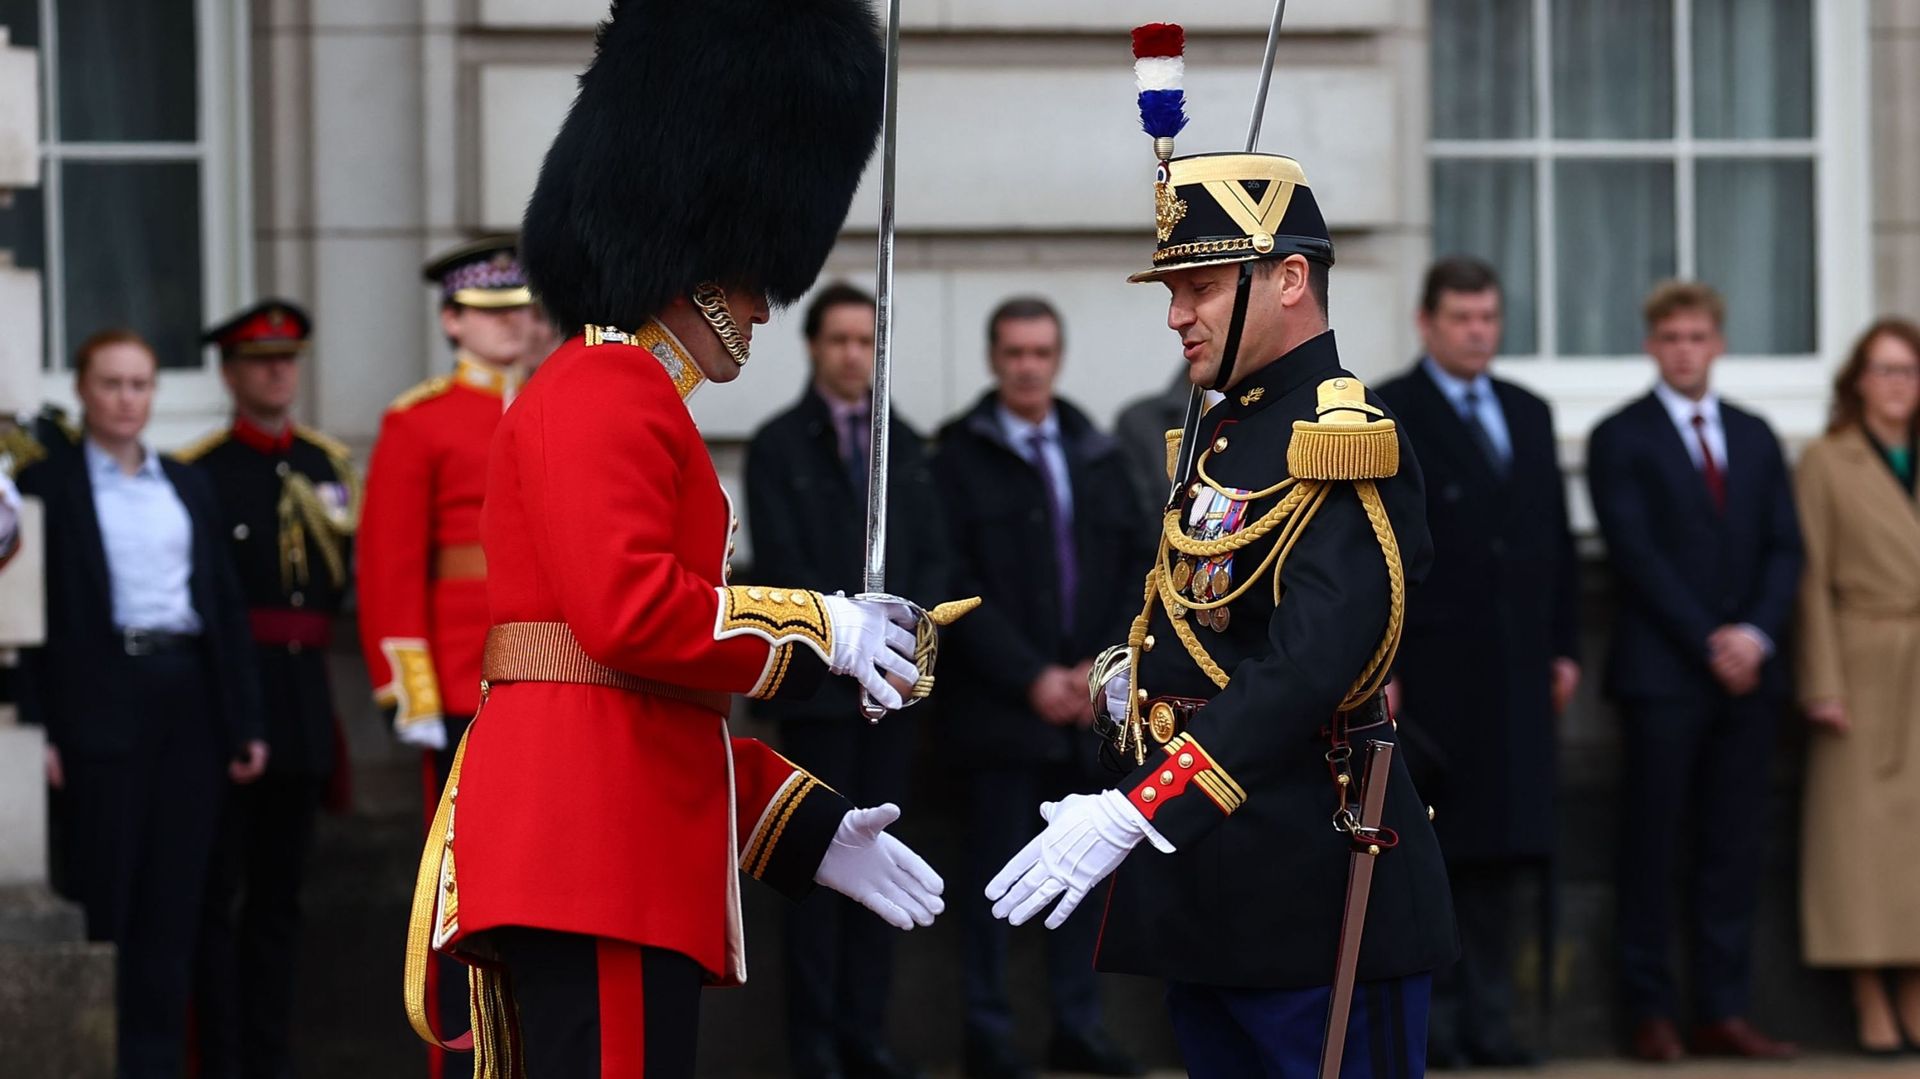 120 ans d’Entente cordiale entre la France et le Royaume-Uni, célébré avec une relève de la garde croisée à l’Élysée et Buckingham . Fd4985548a8c5fc666051ae0f82a02fe-1712578278